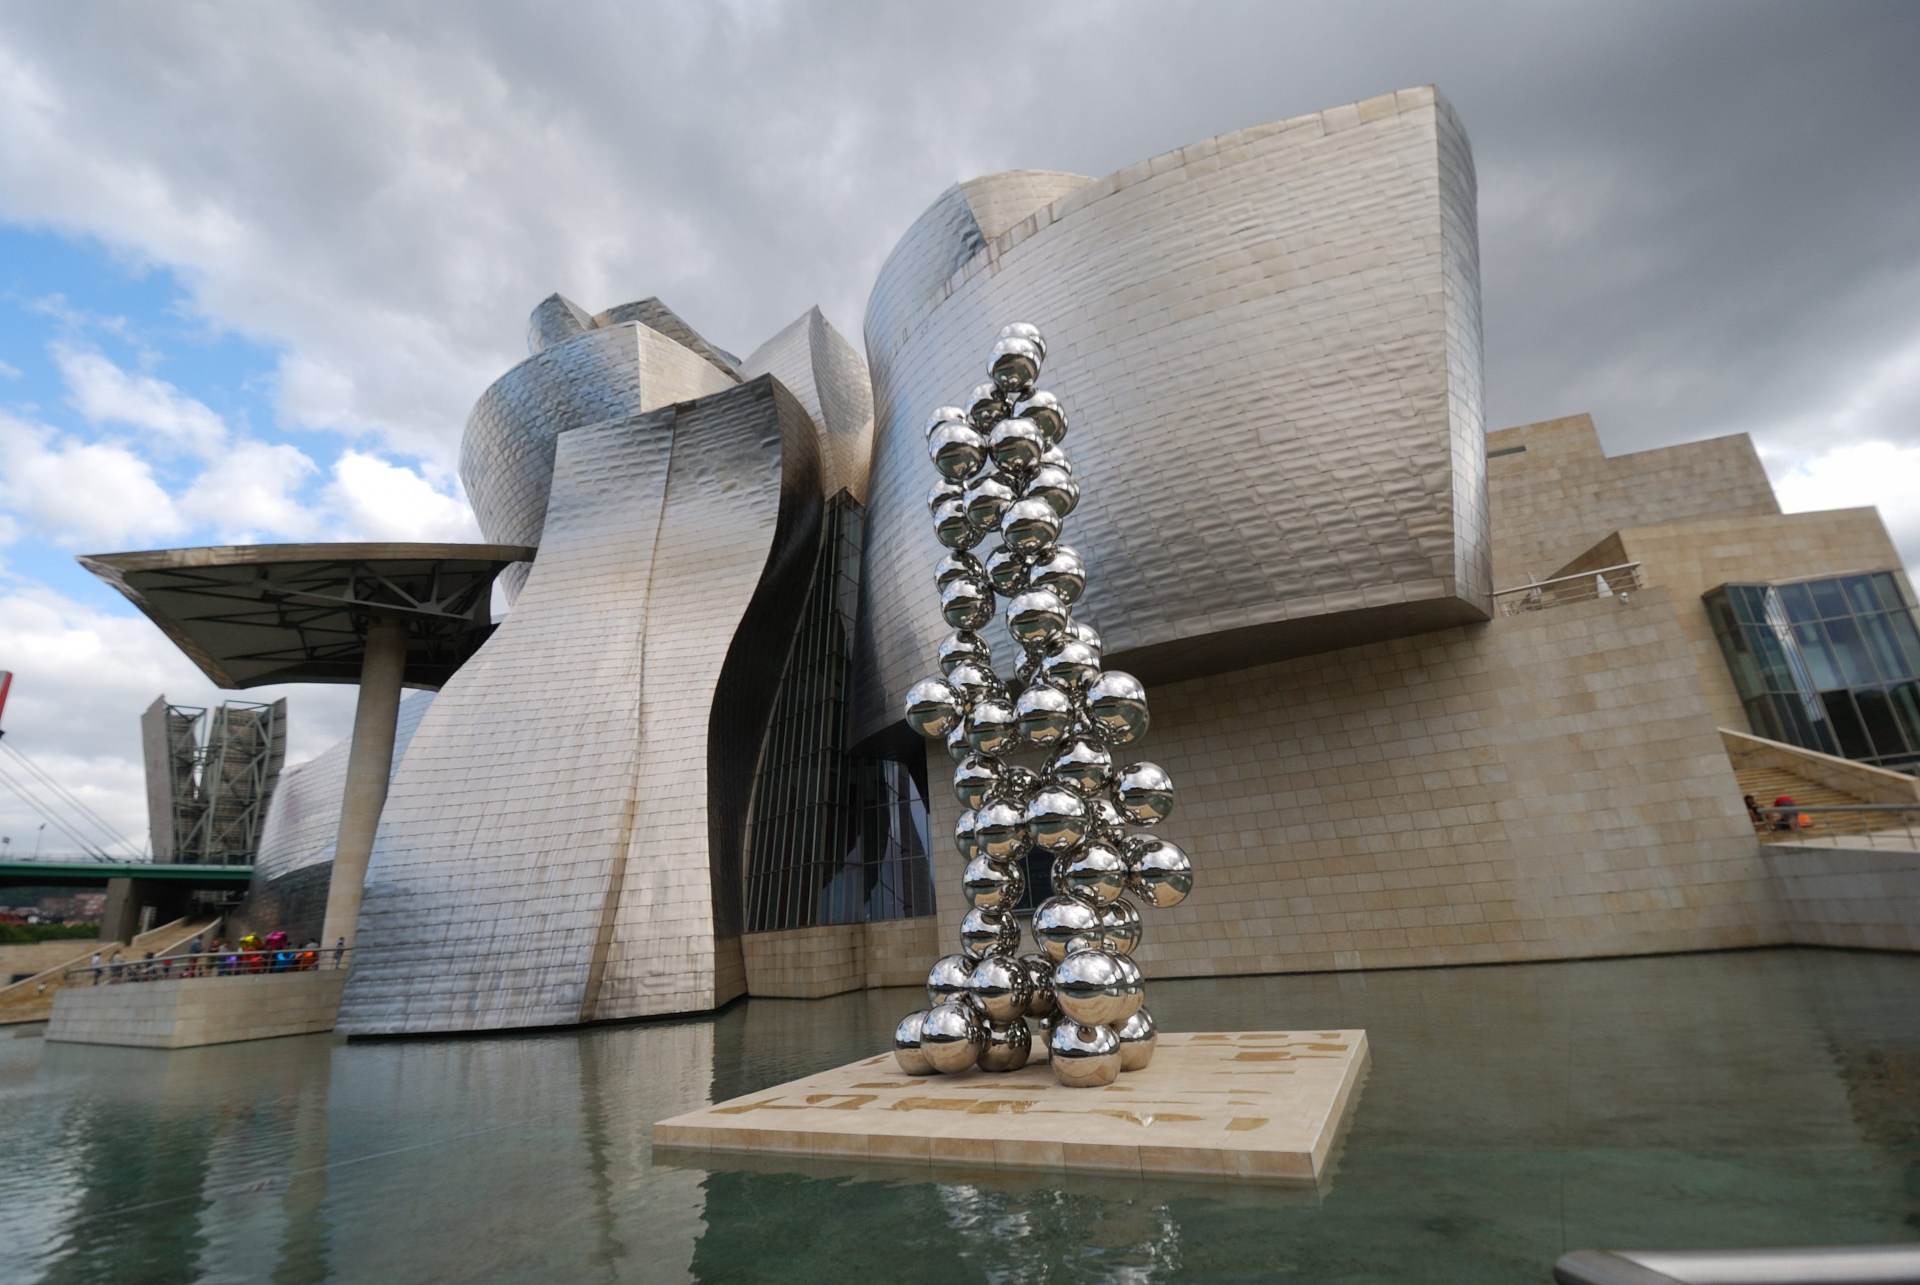 Avant-garde: como esse gênero de arte se manifesta na arquitetura?